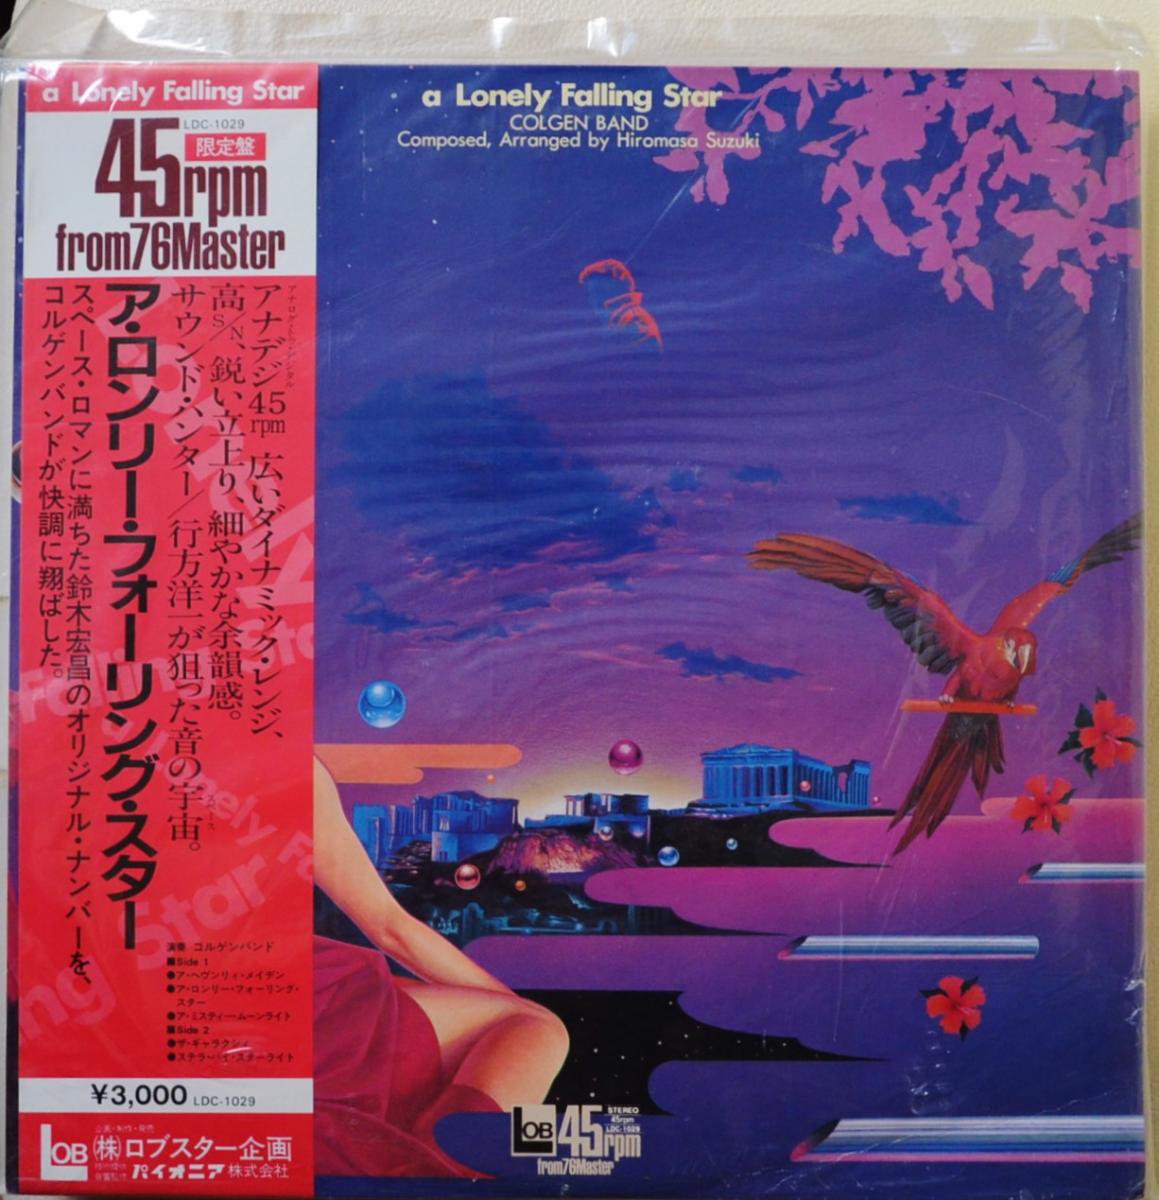 鈴木宏昌 HIROMASA SUZUKI / コルゲンバンド COLGEN BAND / ア・ロンリー・フォーリング・スター A LONELY FALLING STAR (LP)